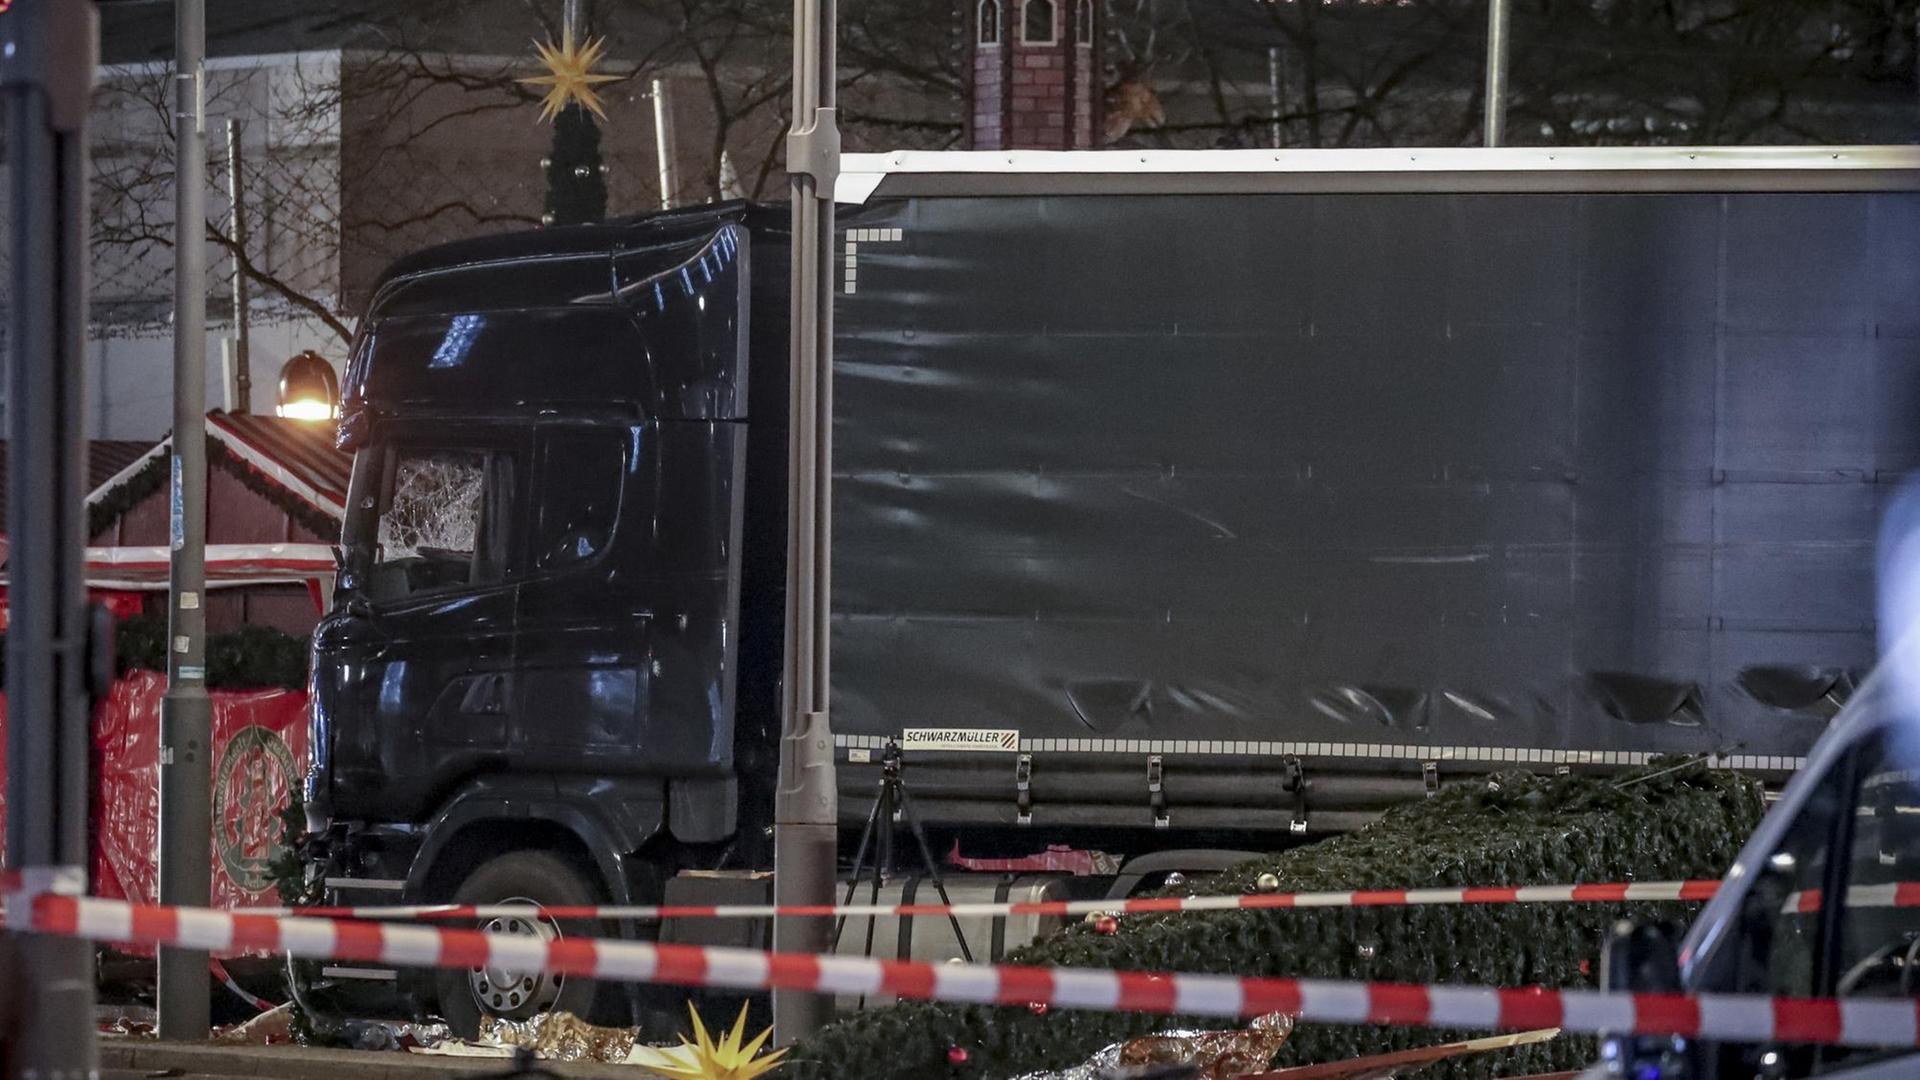 Der LKW steht am 20.12.2016 am Weihnachtsmarkt am Breitscheidplatz in Berlin. Bei dem Terroranschlag starben 12 Menschen auf dem Weihnachtsmarkt, als der Tunesier Anis Amri einen polnischen LKW in die Menschenmenge steuerte.